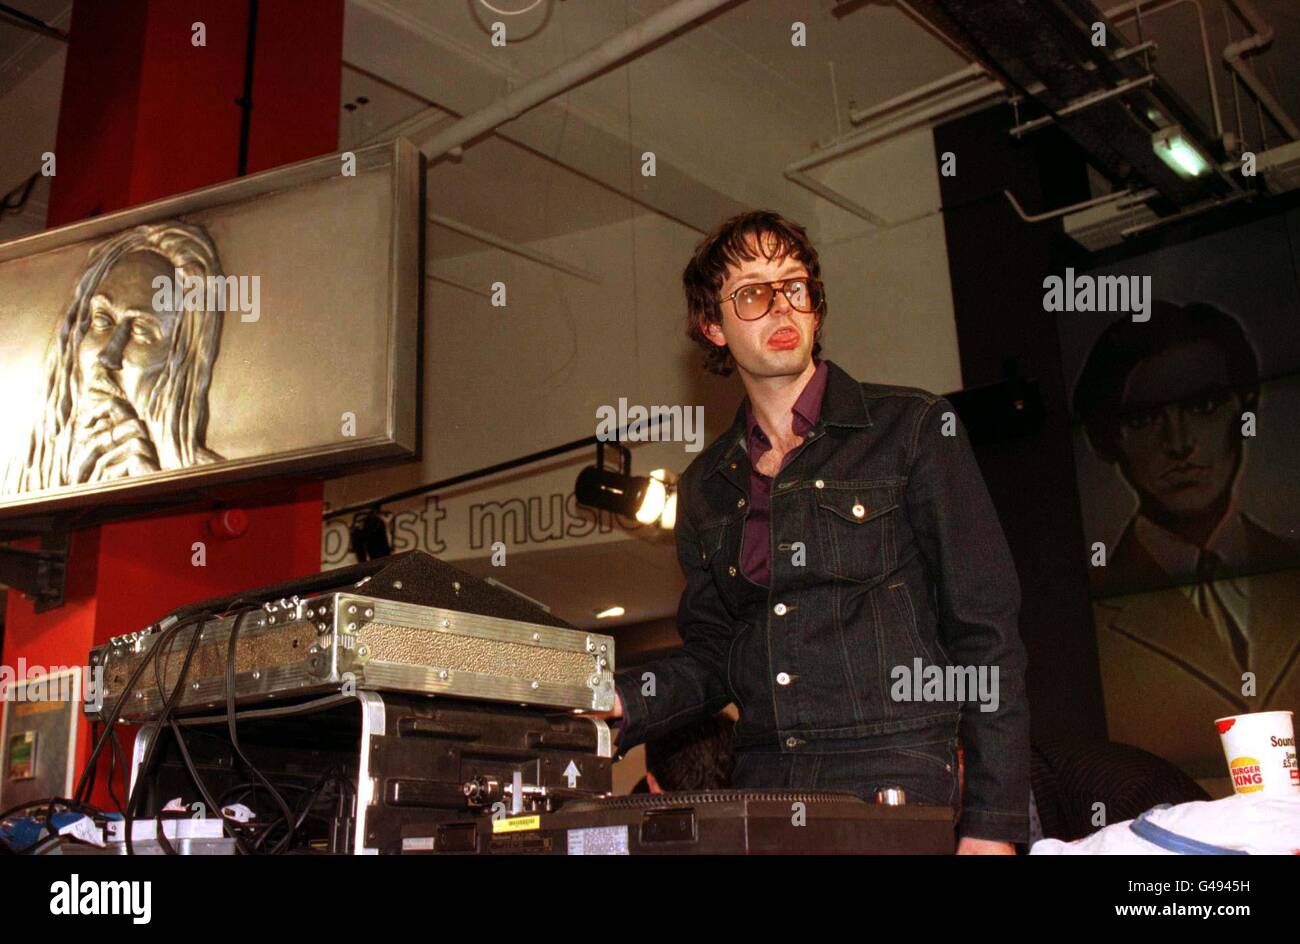 PA NEWS FOTO 16/10/97 Jarvis Cocker cantante del gruppo "pasta di legno" all'HMV flagship filiale a Oxford Circus, Londra Foto Stock